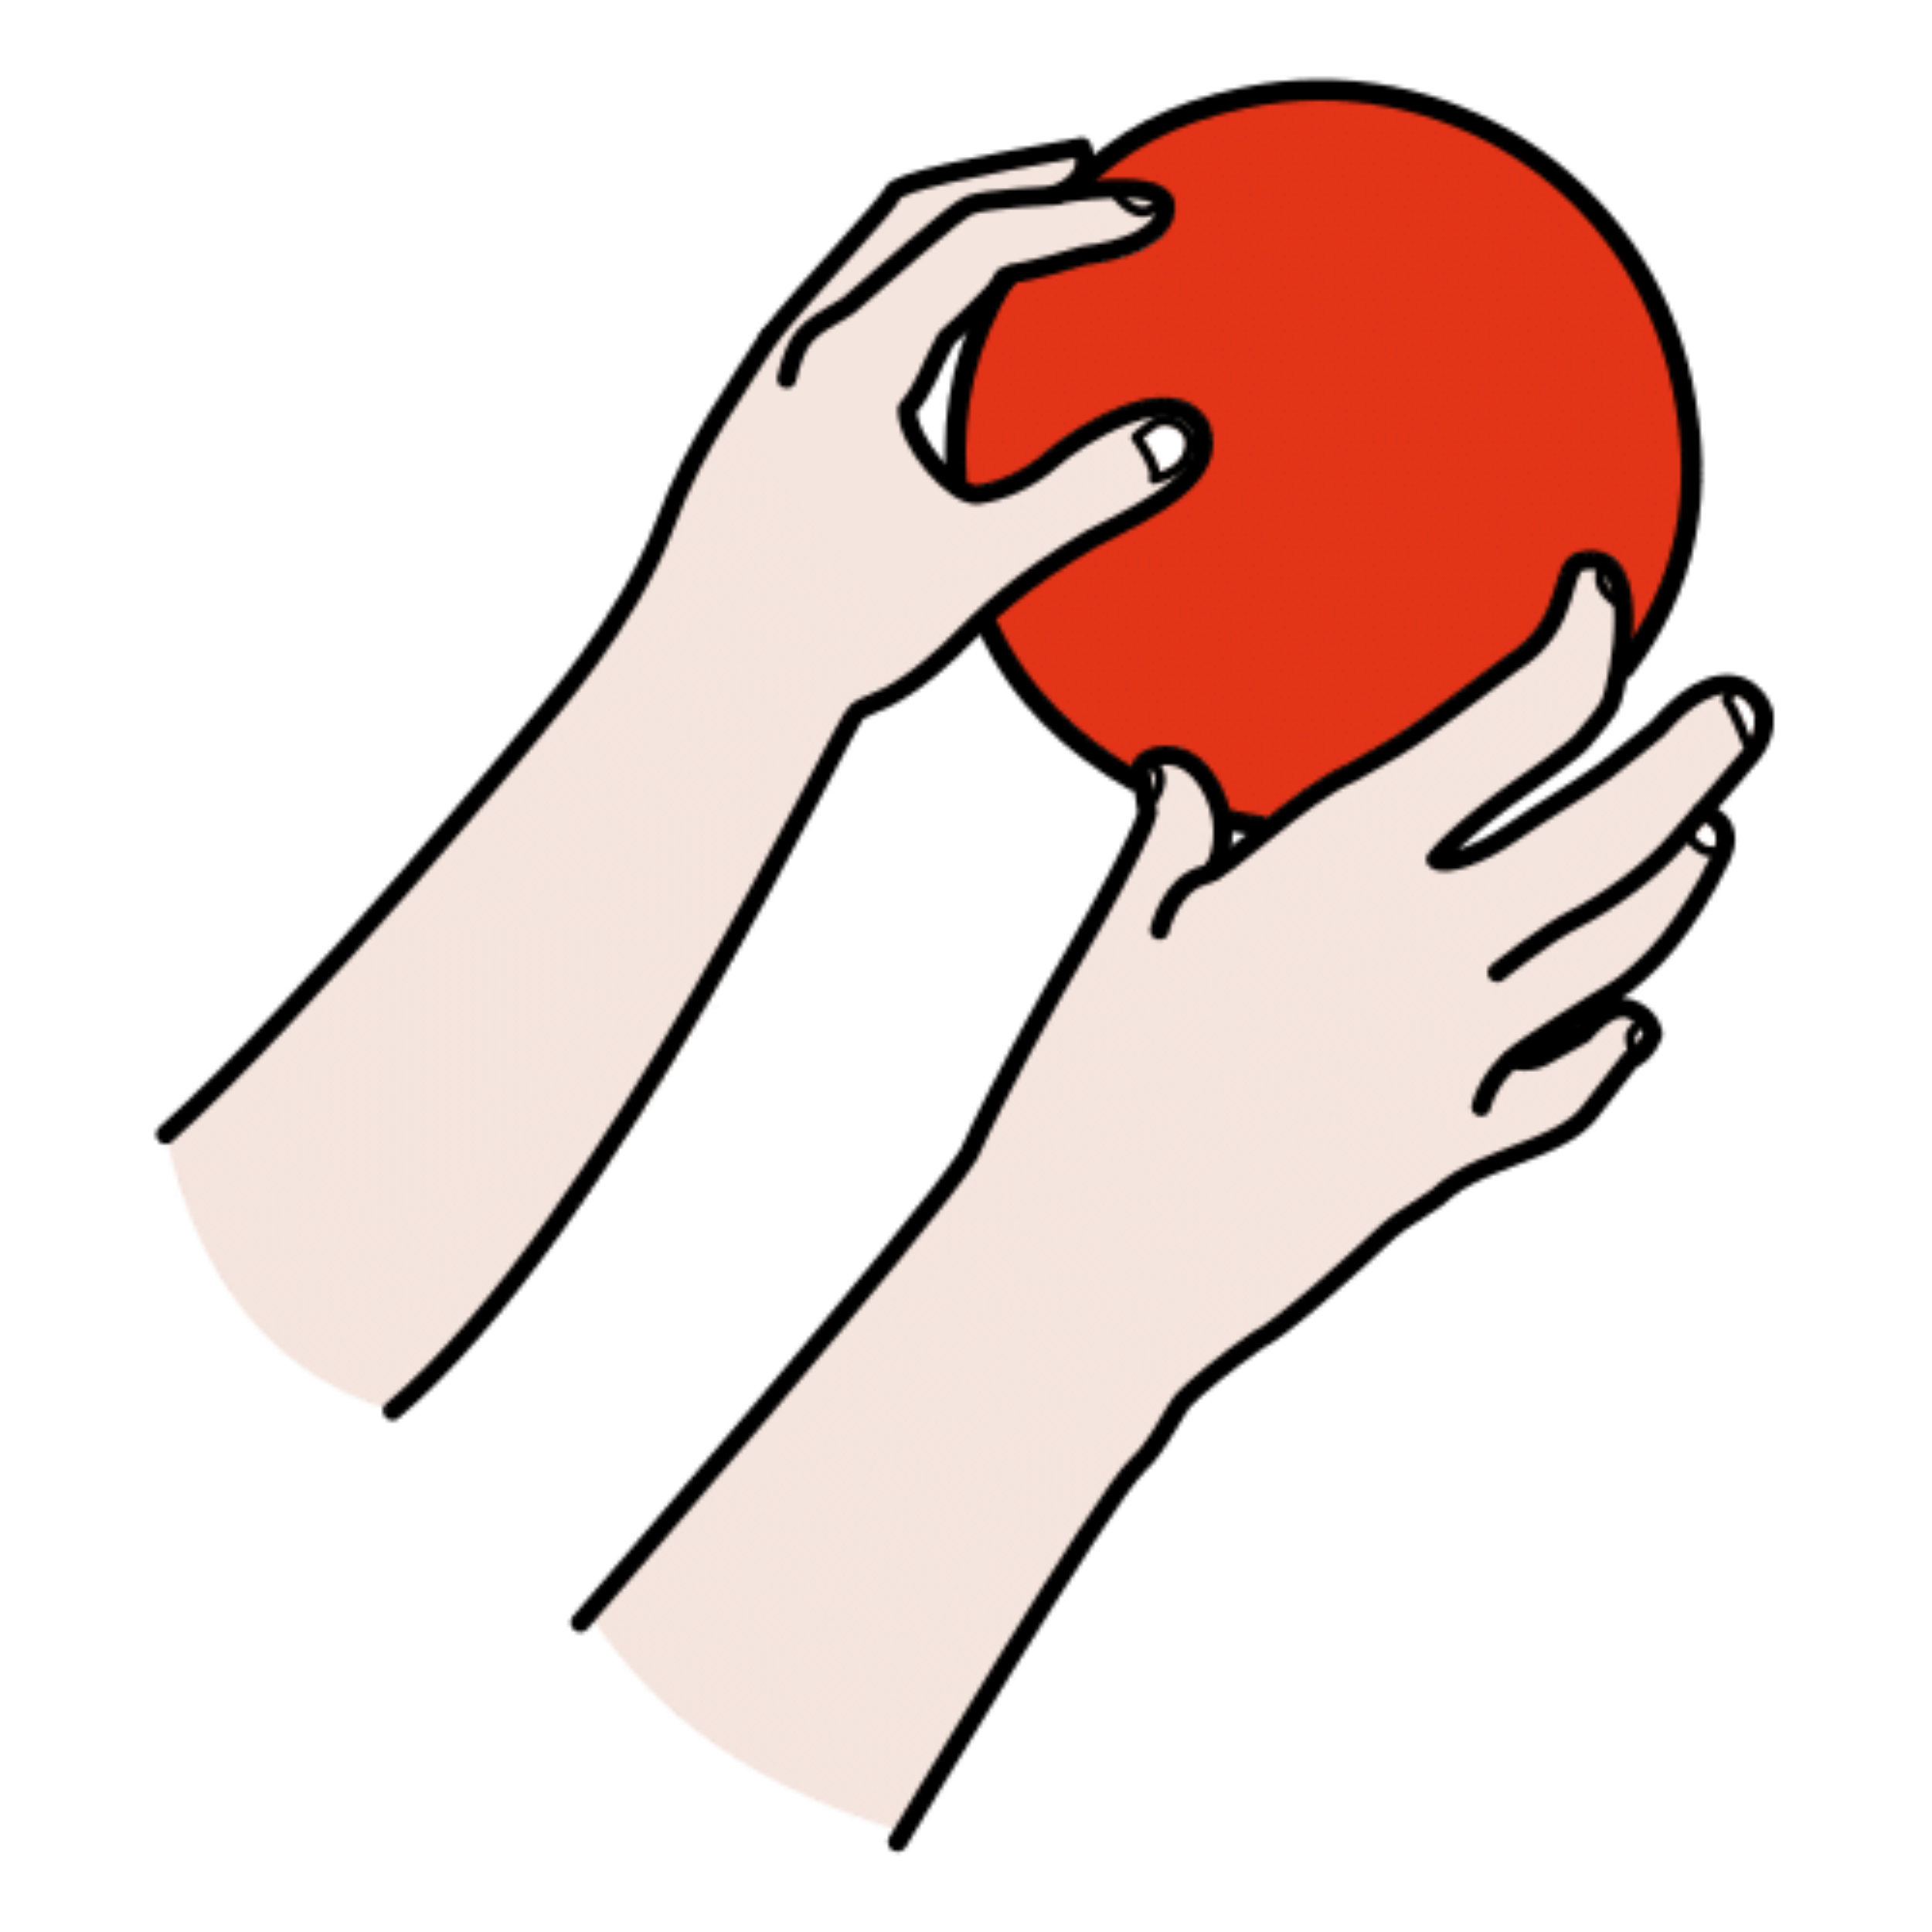 La imagen muestra dos manos alcanzando una pelota.